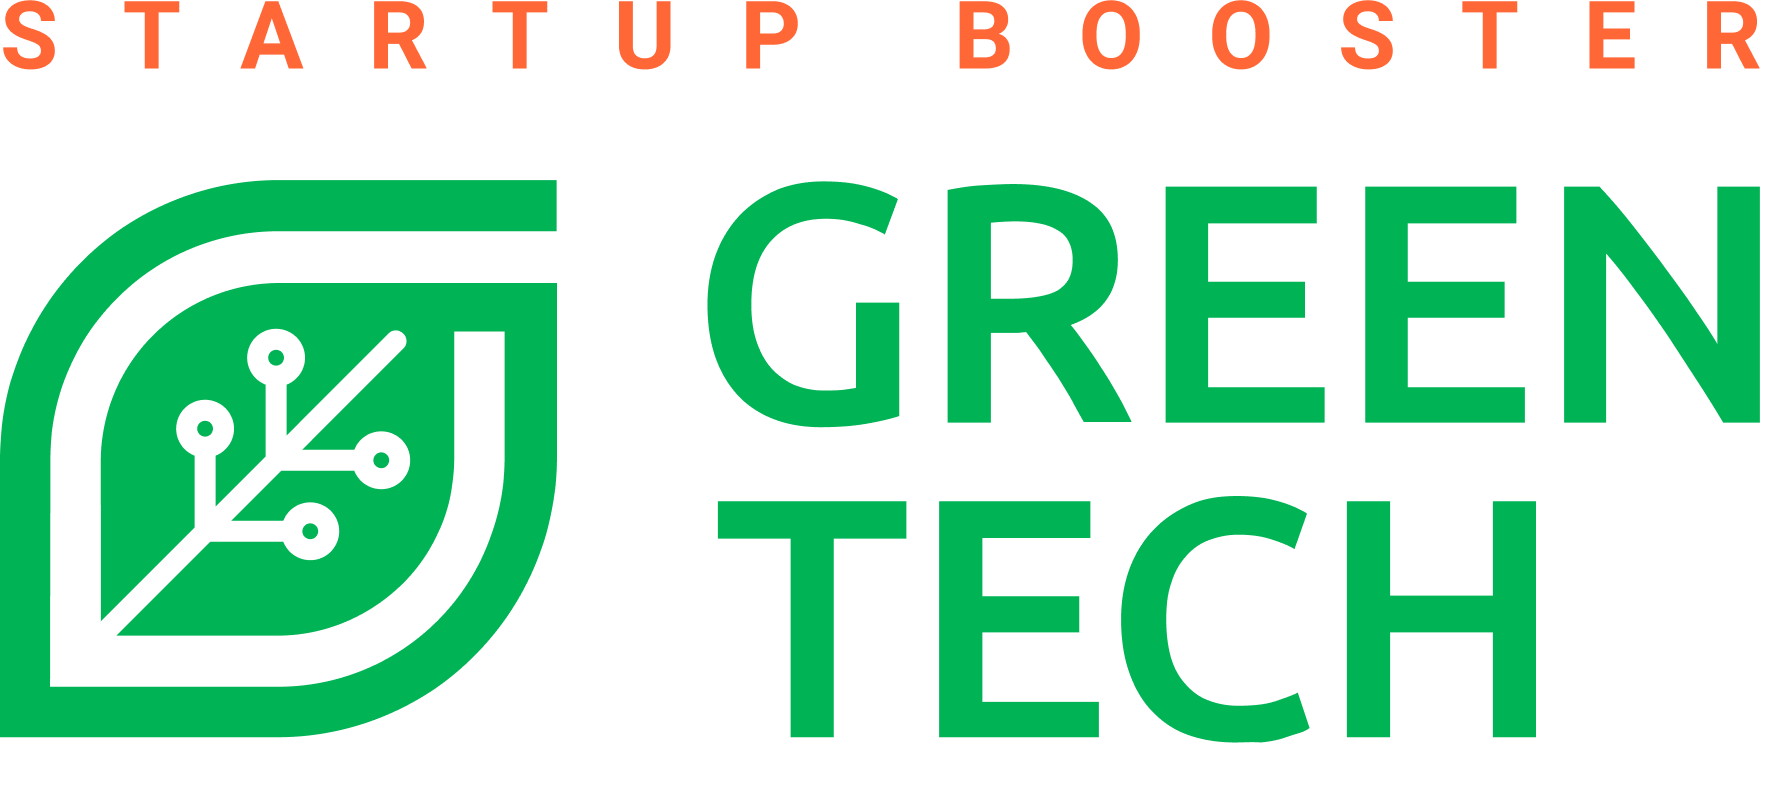 «GreenTech» - первый в России акселератор технологических стартапов в области экологии